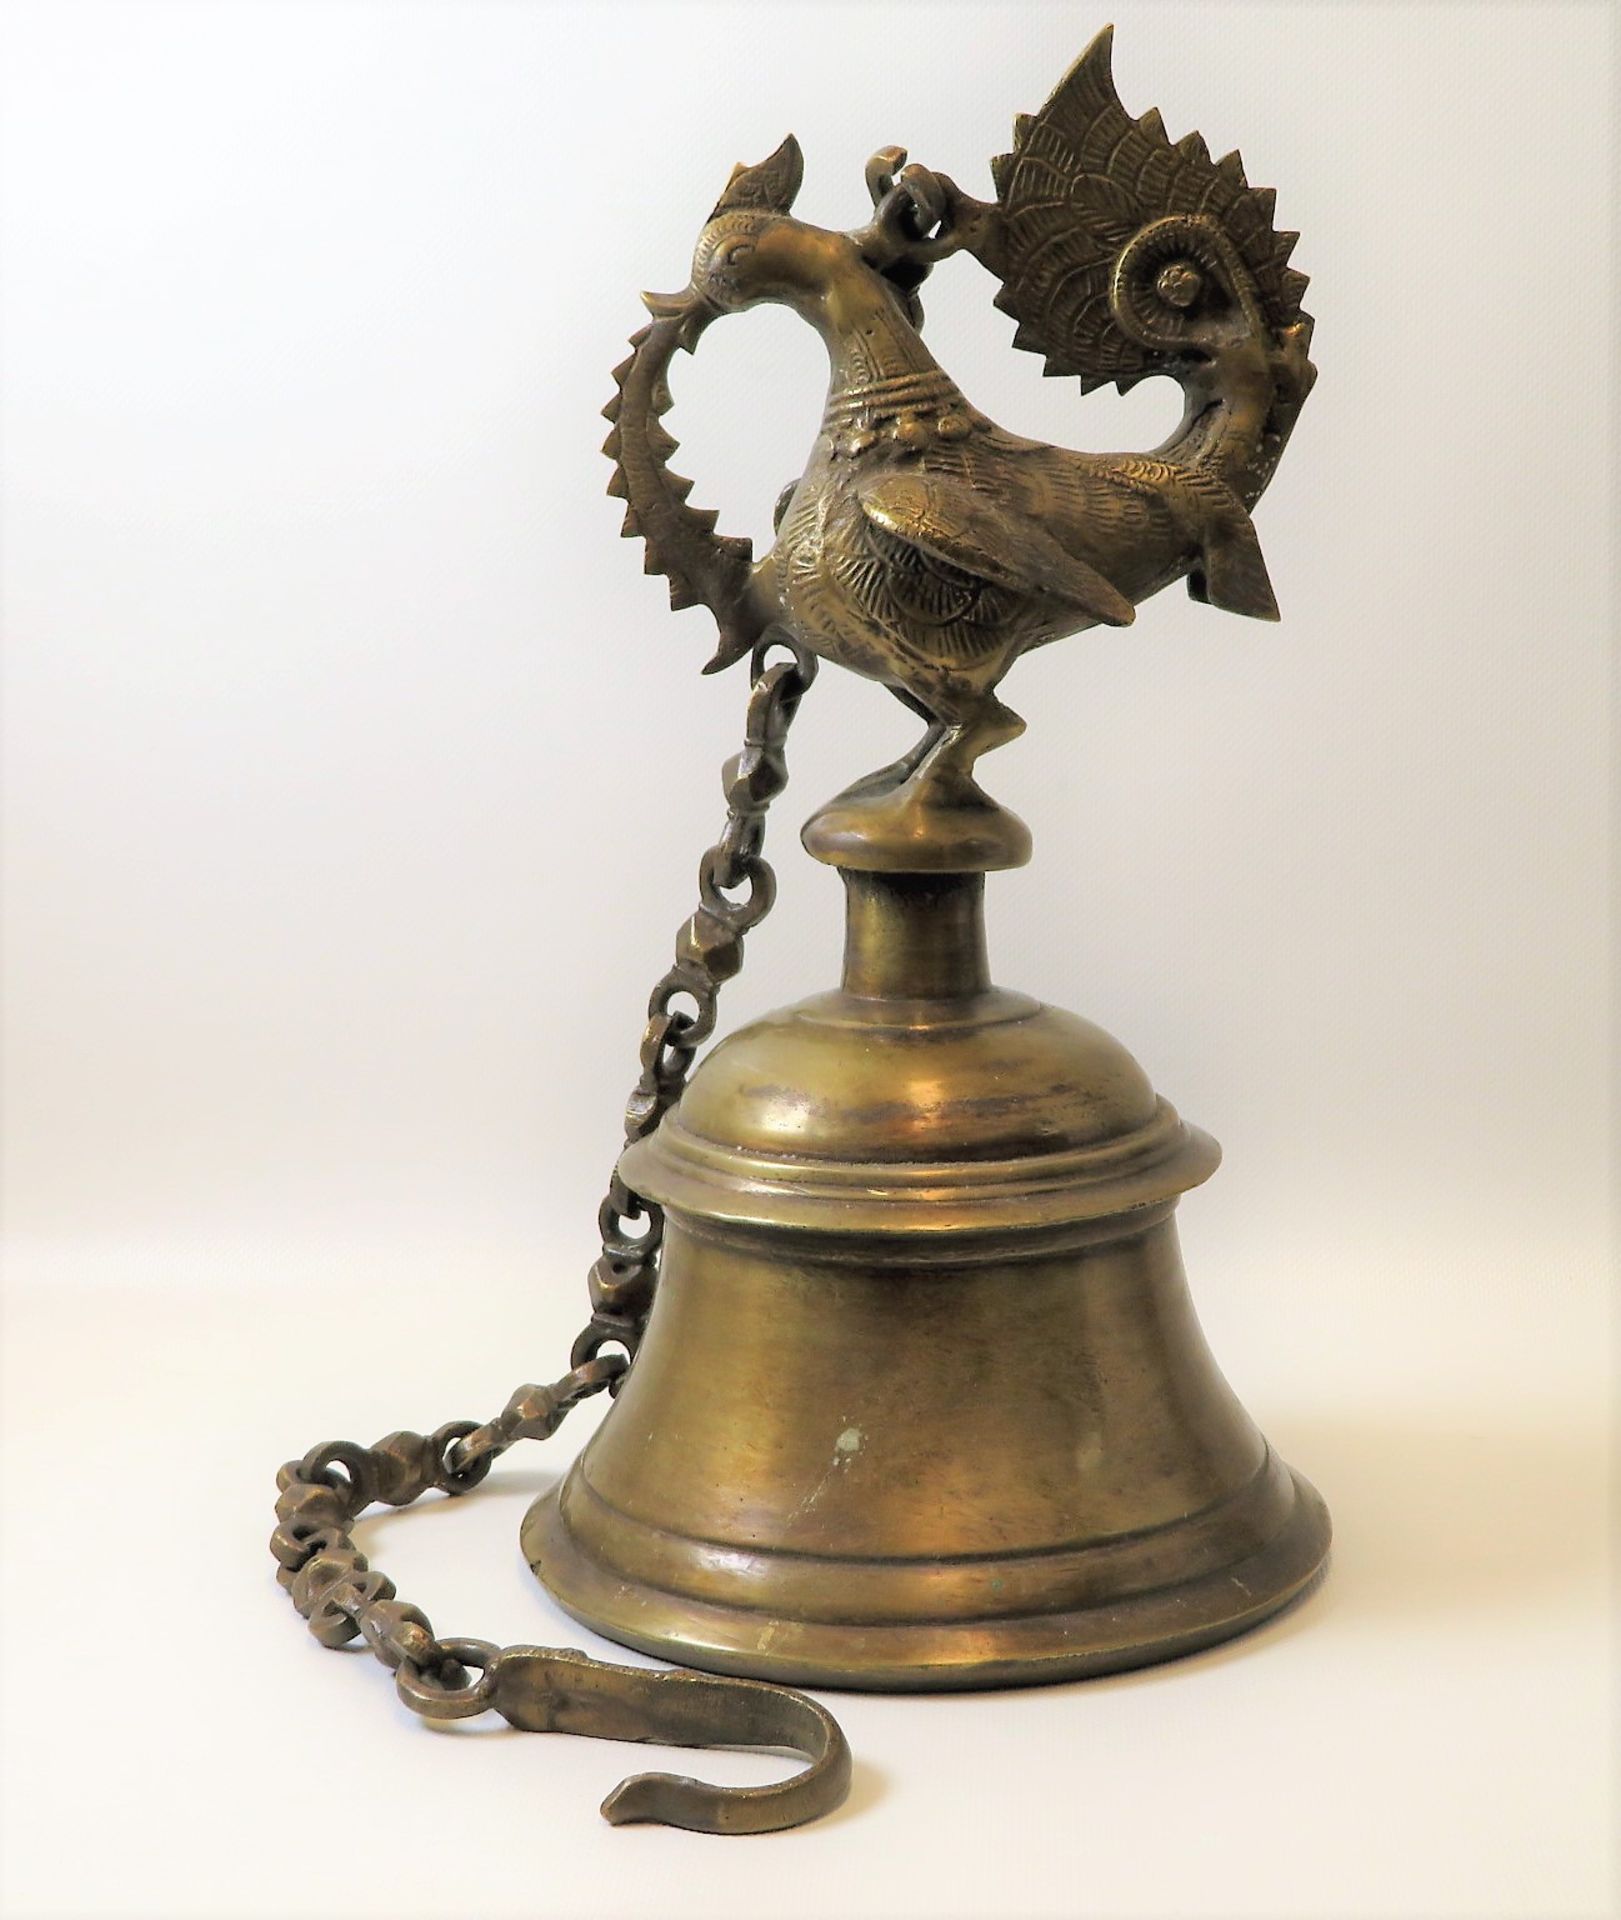 Rituelle Glocke, wohl Indien, um 1900, Bronze, h 37 cm, d 20 cm.